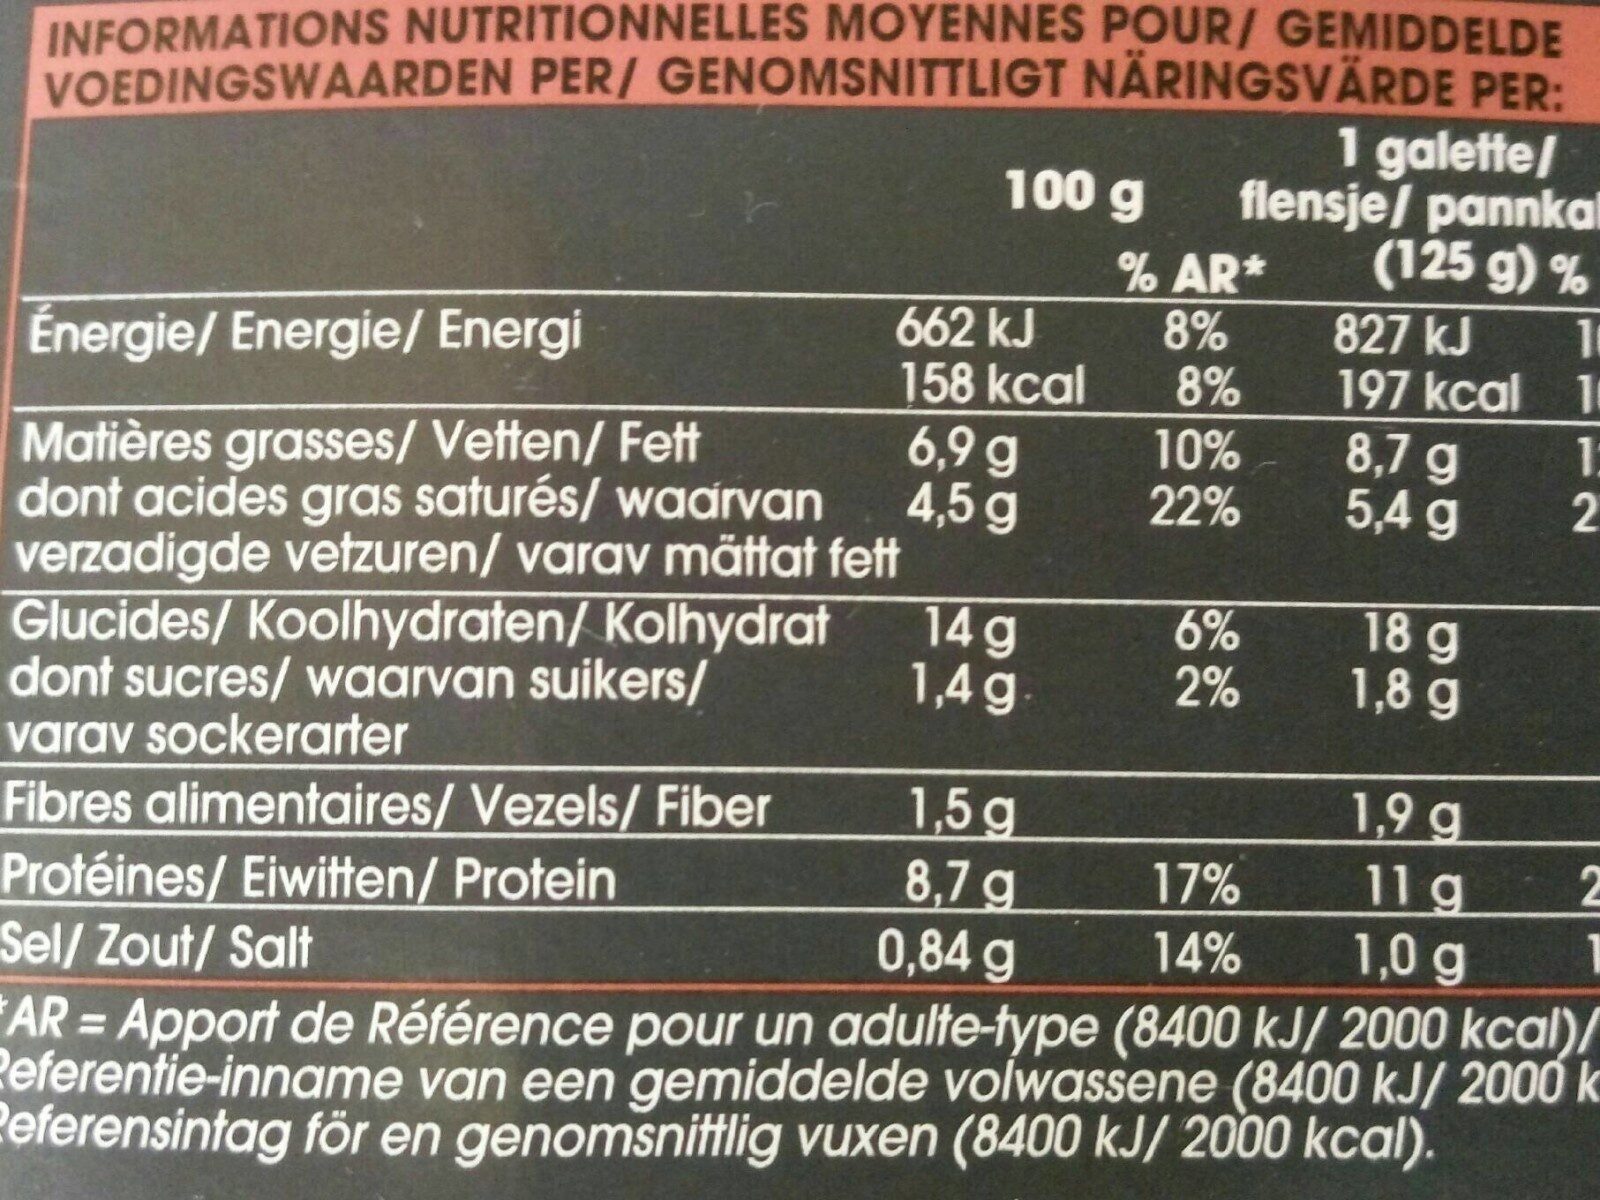 2 galettes au sarrasin champignon jambon emmental - Nutrition facts - fr